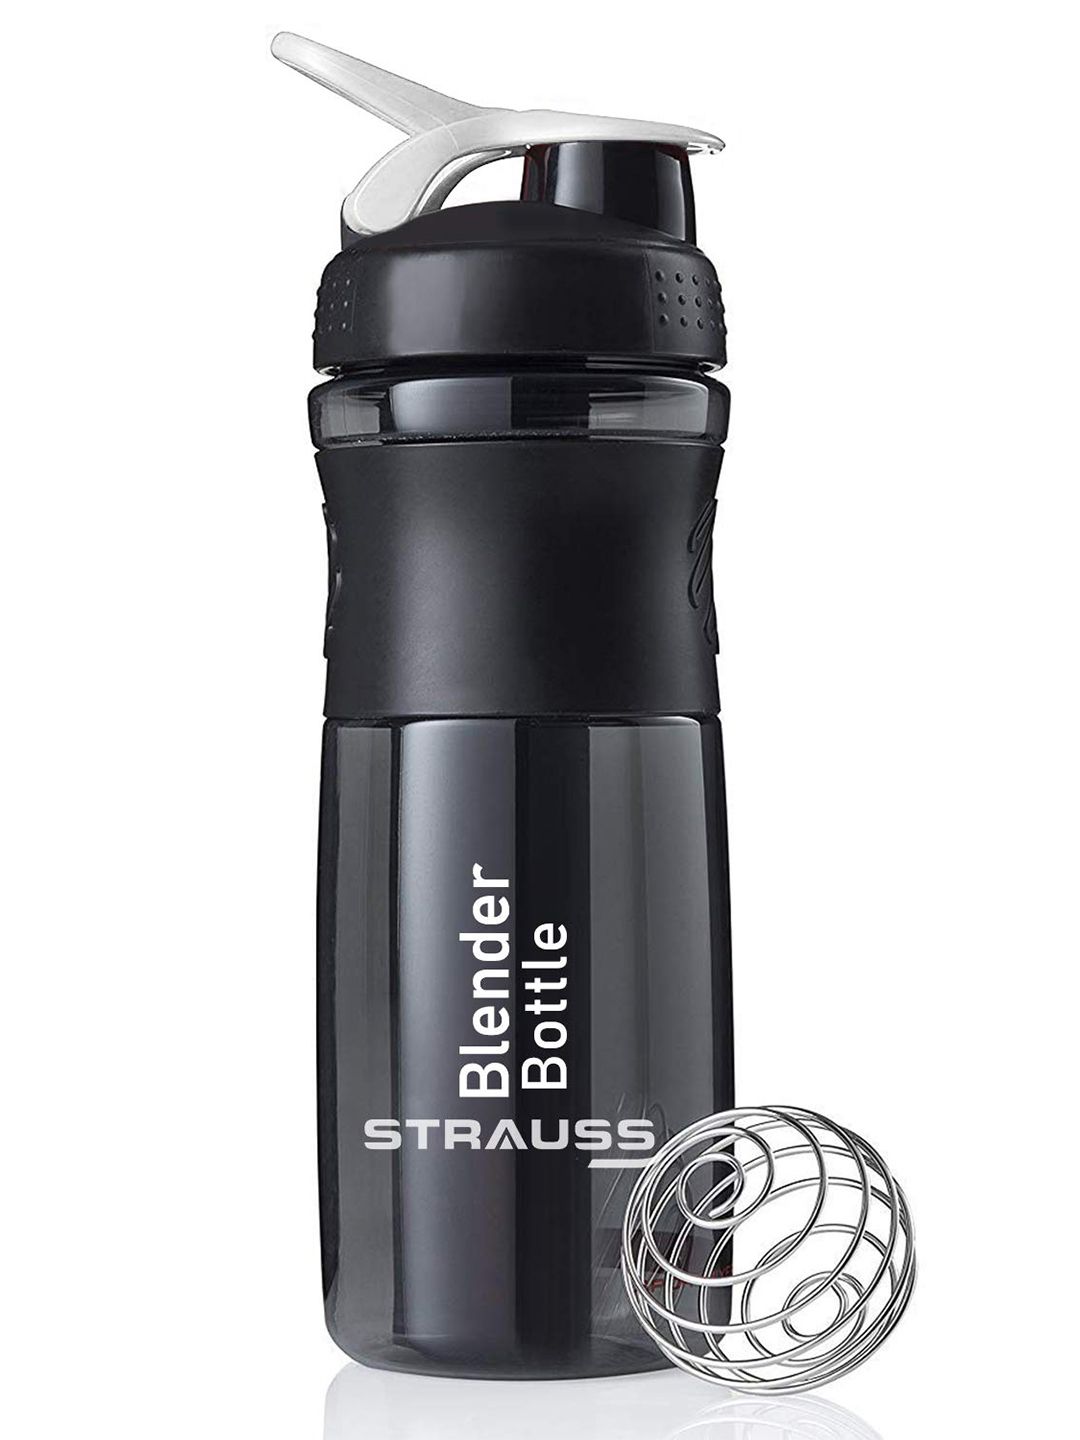 STRAUSS Black Solid Blender Shaker Bottle 760 ml Price in India